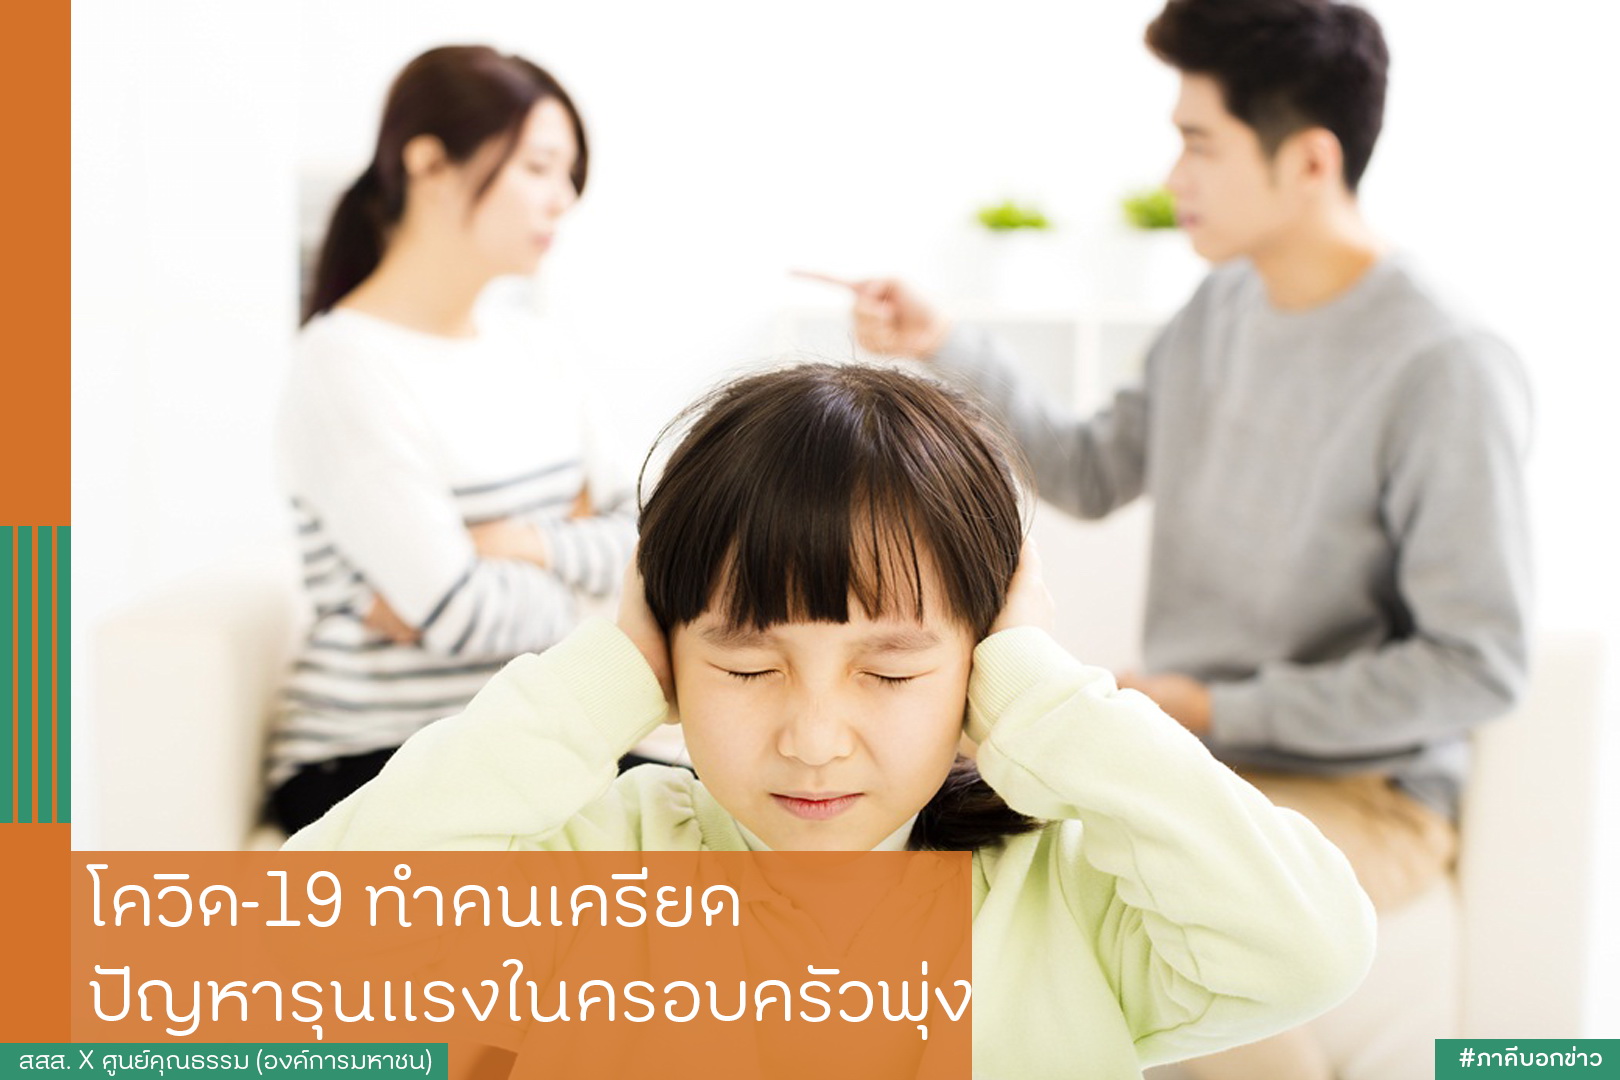 โควิด-19 ทำคนเครียด ปัญหารุนแรงในครอบครัวพุ่ง thaihealth